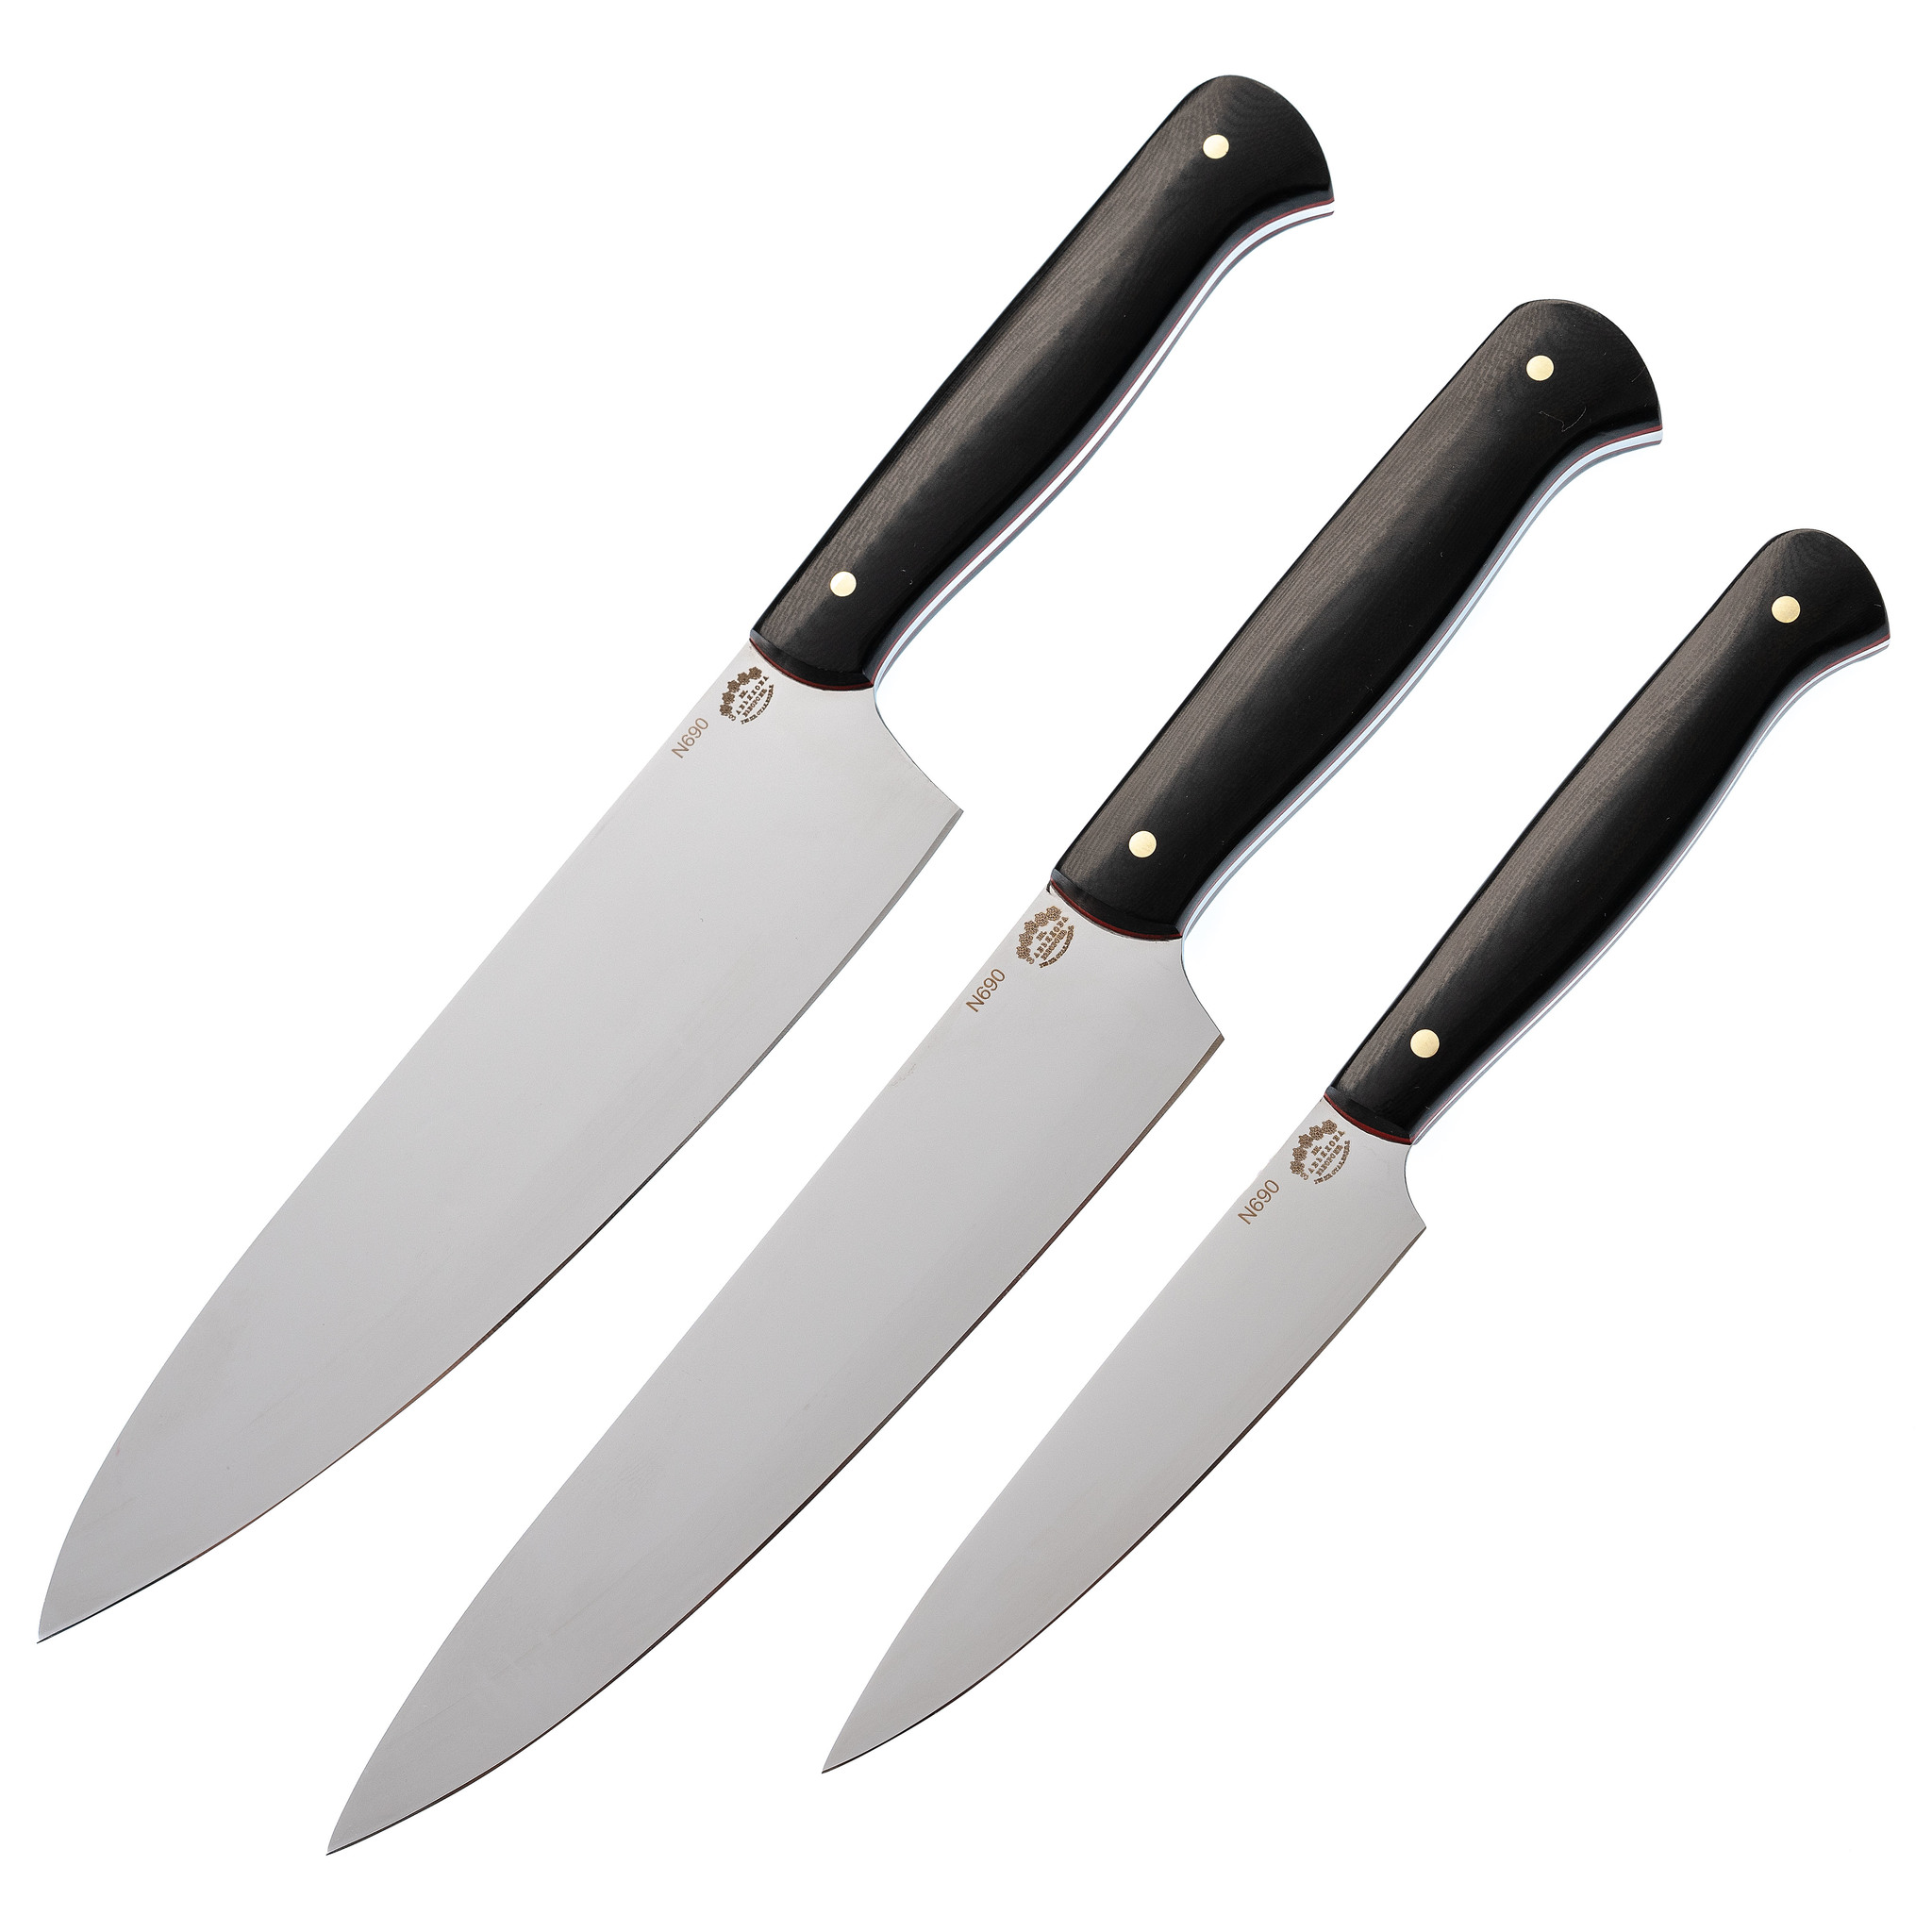  кухонных ножей, сталь N690, рукоять G10, zav_kuh2 по цене 20990.0 .